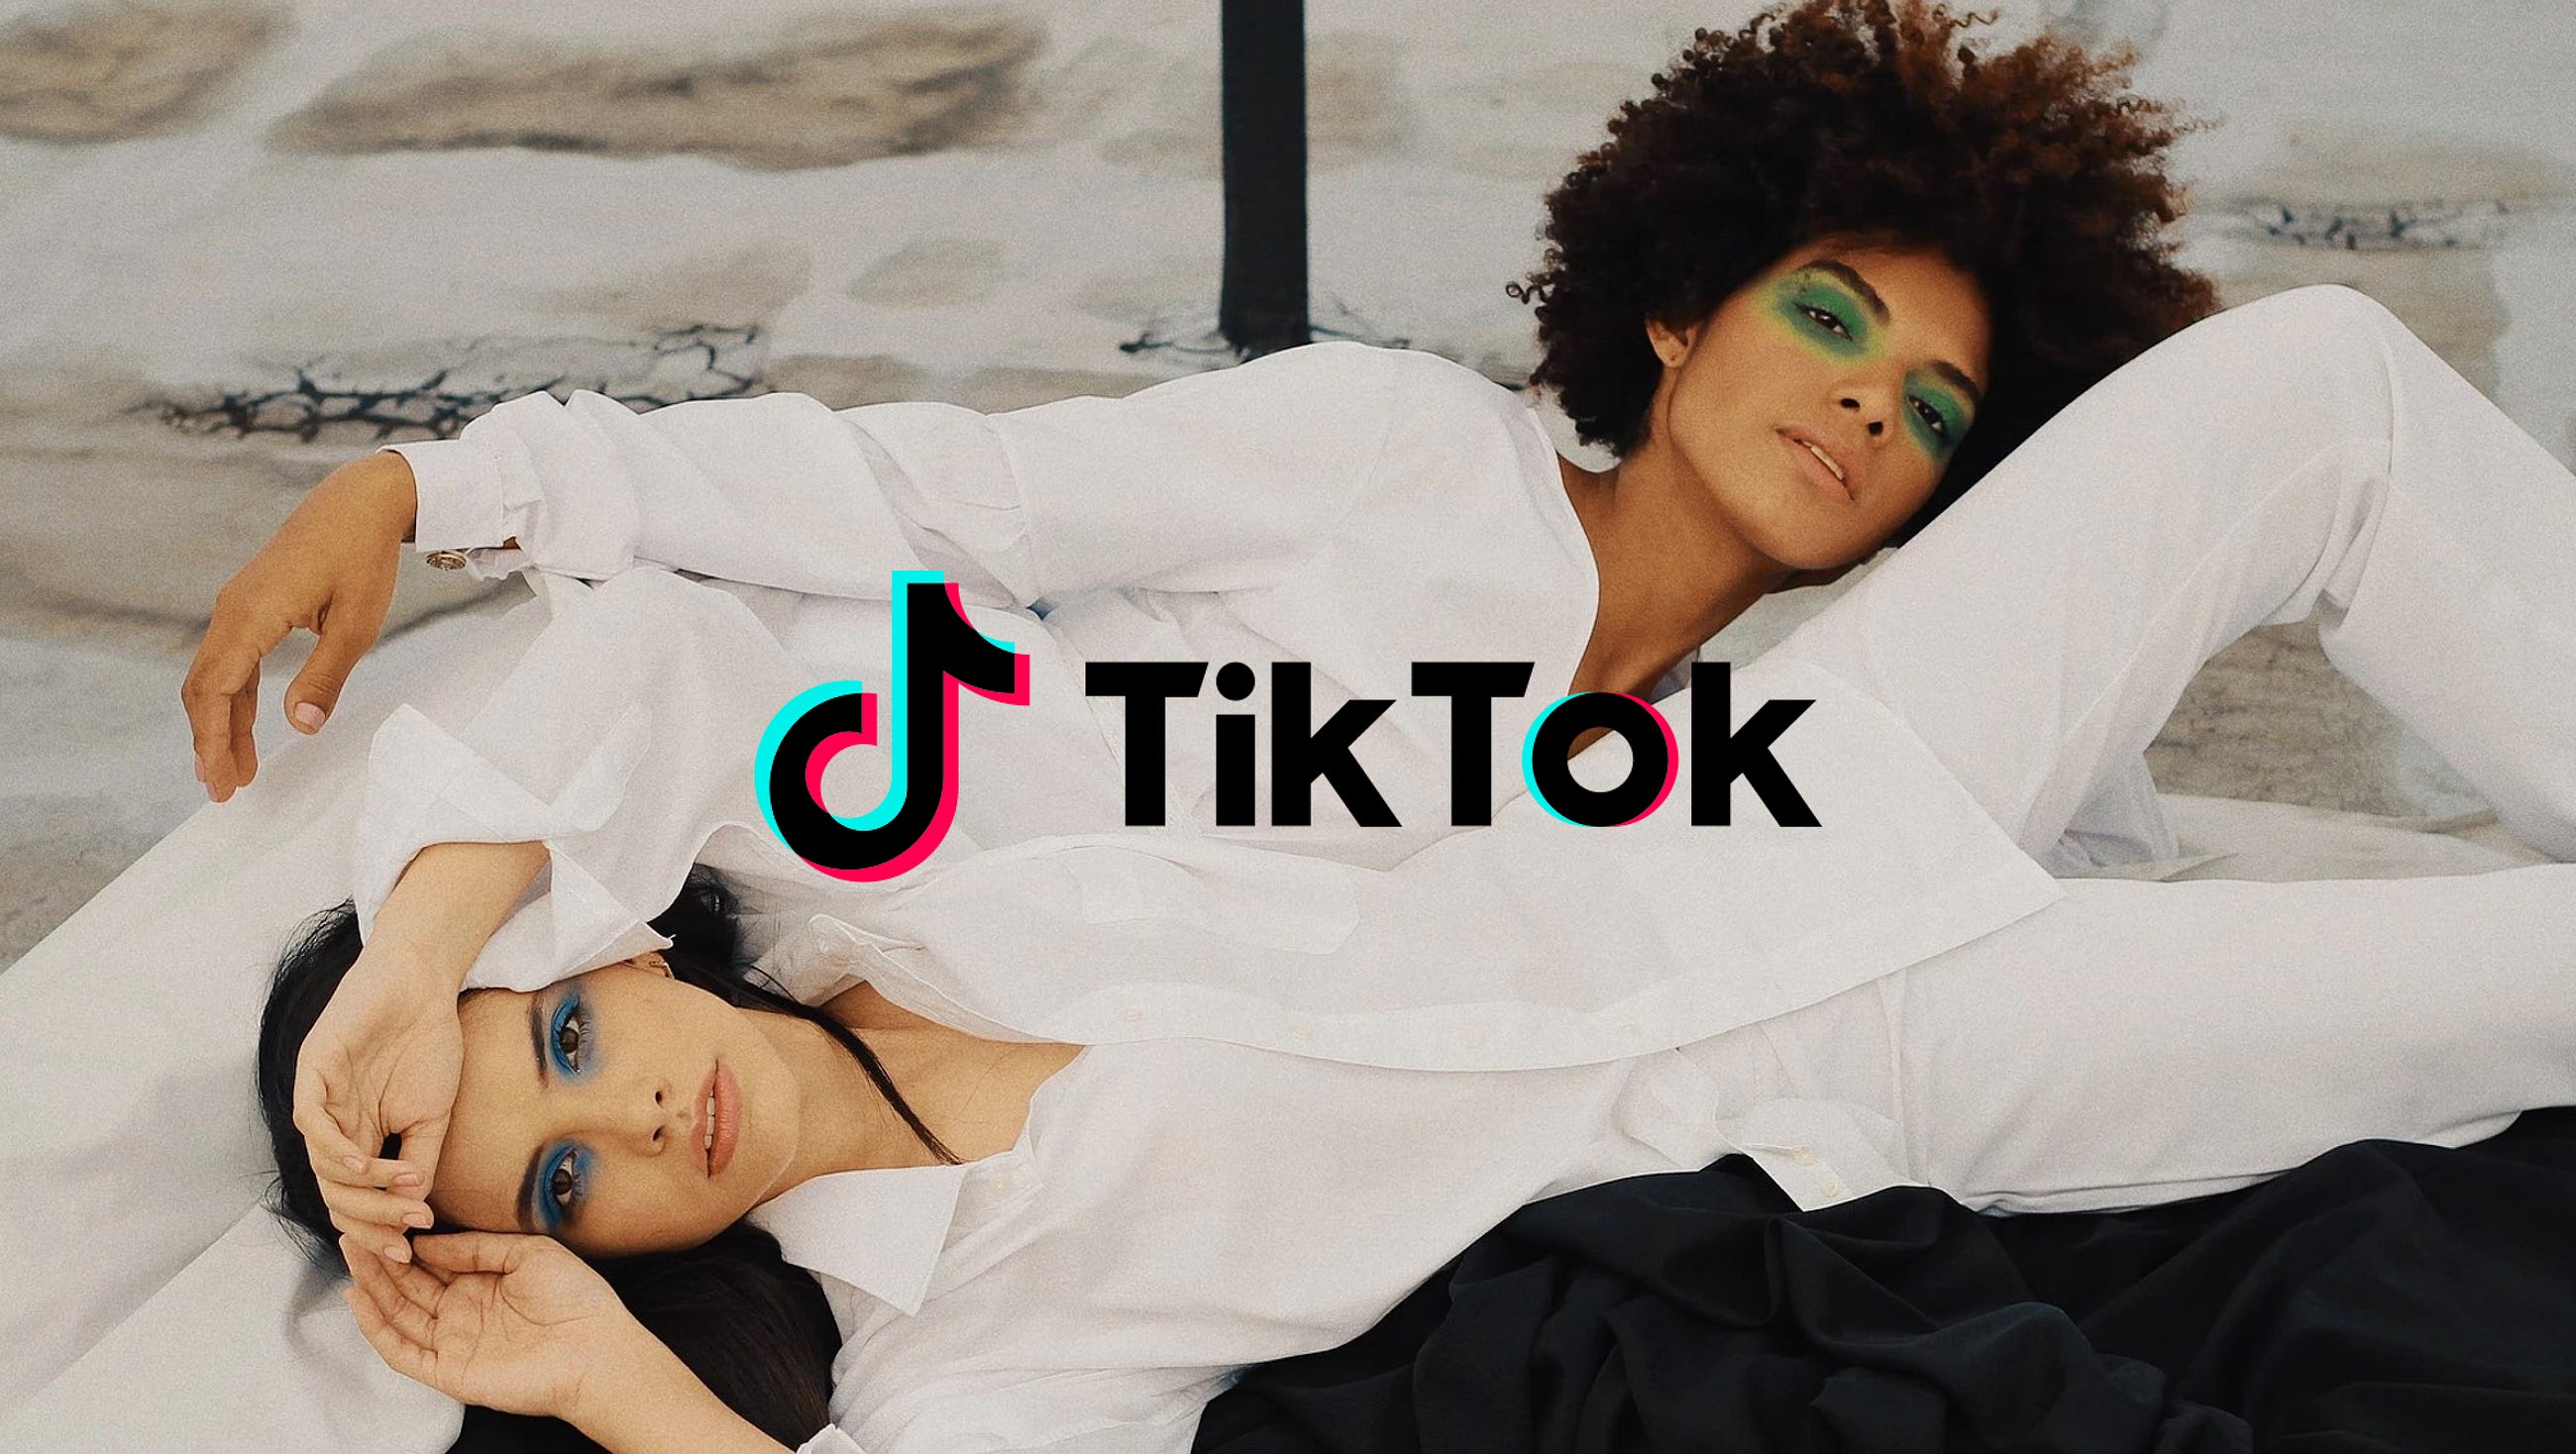 The TikTok Sensation